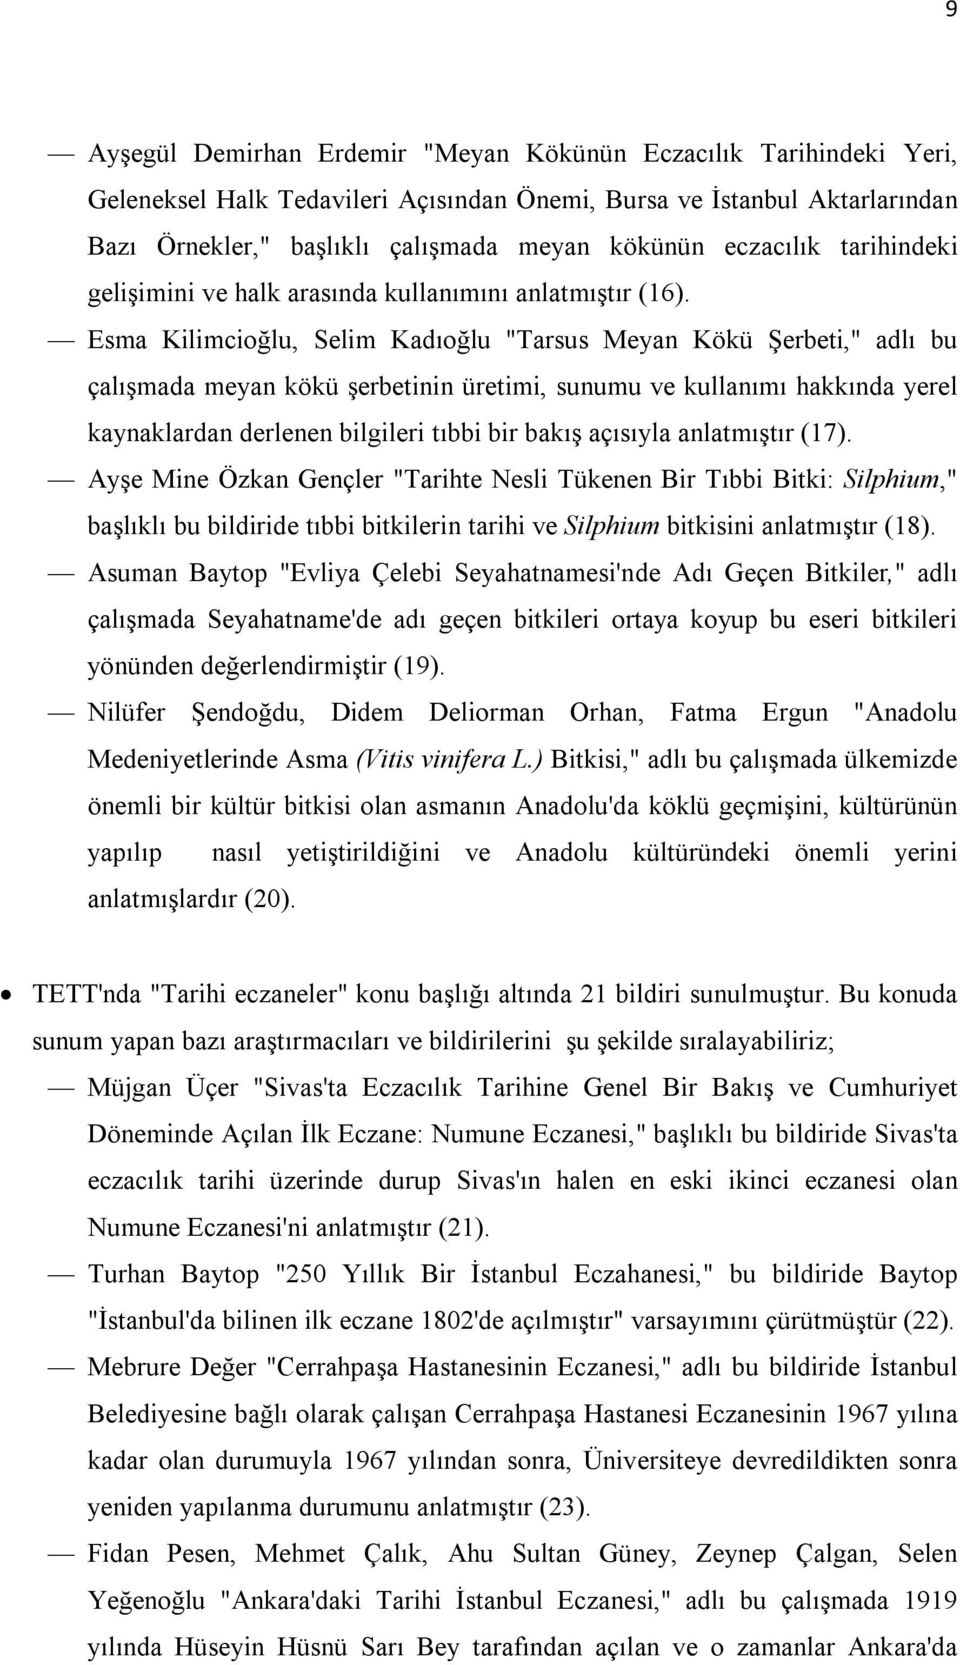 Esma Kilimcioğlu, Selim Kadıoğlu "Tarsus Meyan Kökü Şerbeti," adlı bu çalışmada meyan kökü şerbetinin üretimi, sunumu ve kullanımı hakkında yerel kaynaklardan derlenen bilgileri tıbbi bir bakış